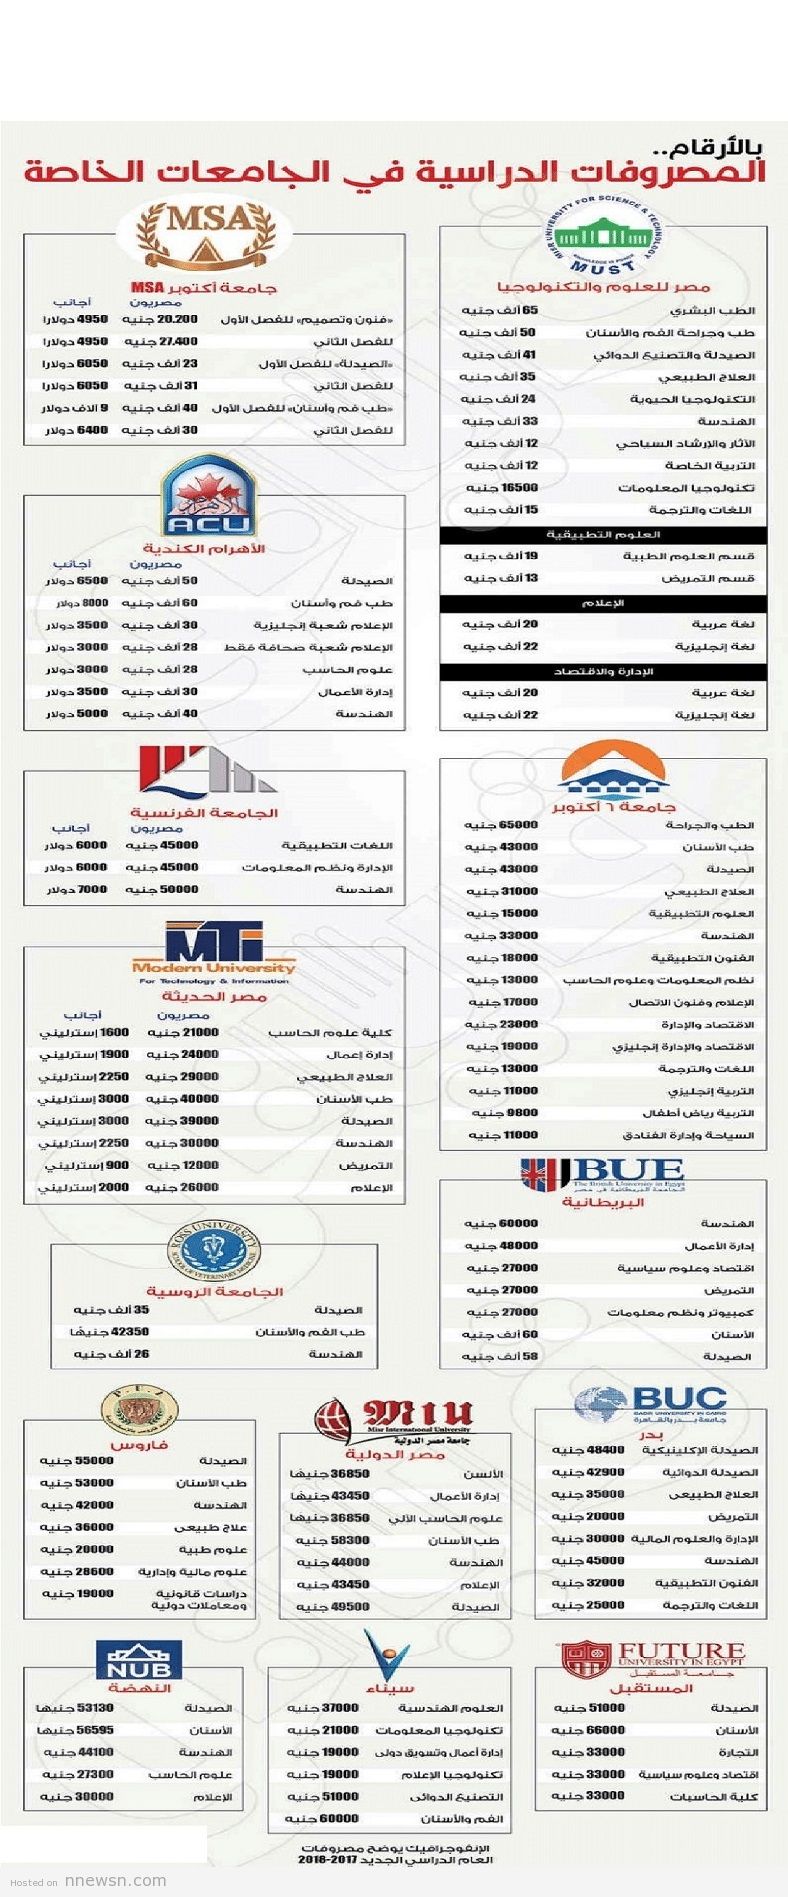 مصاريف الجامعات الخاصة مصروفات كليات الجامعات الخاصة في مصر 2017